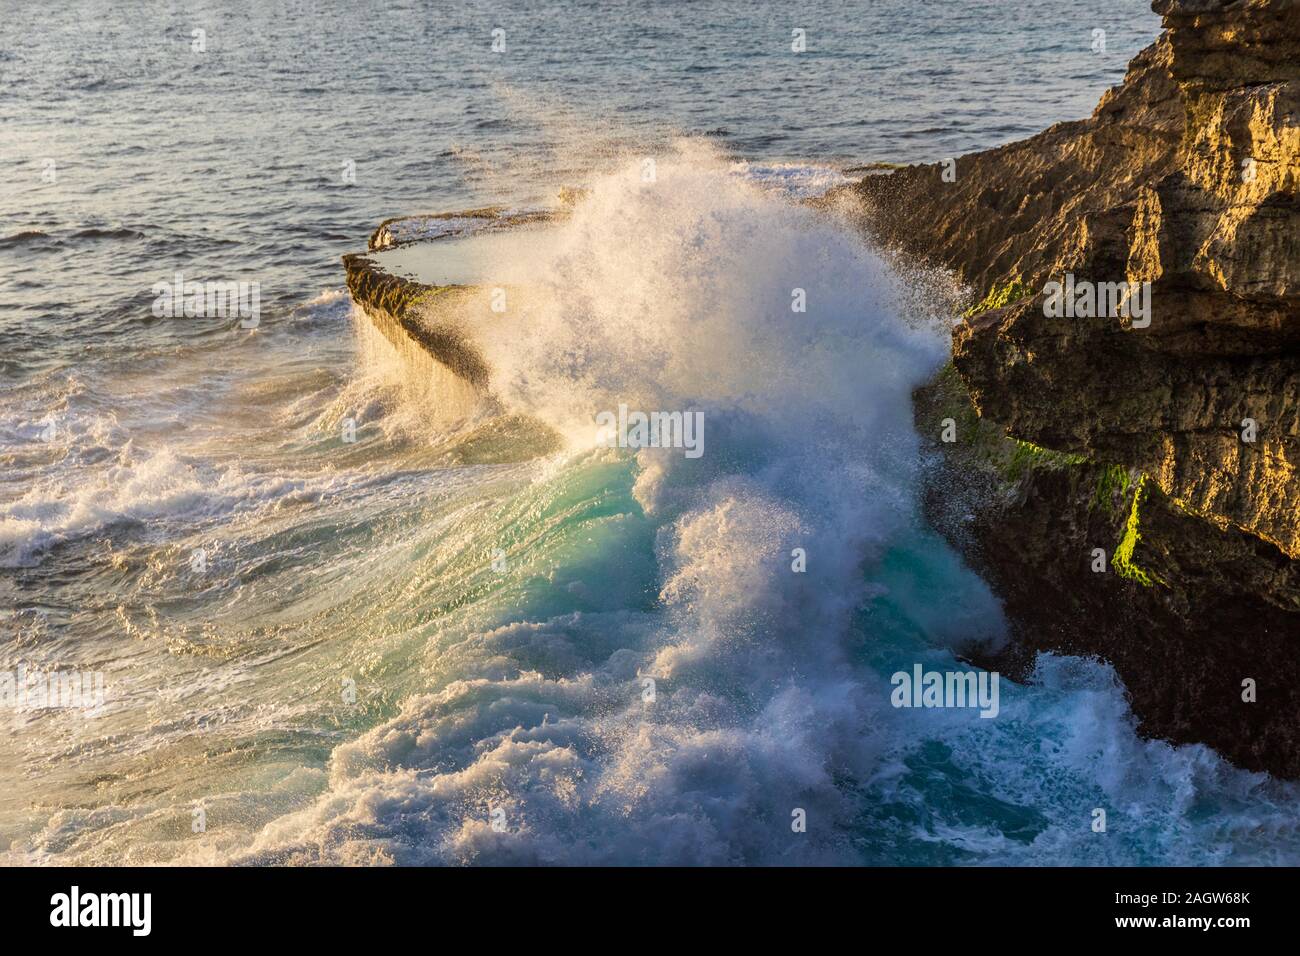 Giant Wave schiantarsi contro il promontorio roccioso in corrispondenza del diavolo, strappo sulla costa di Nusa Lembongan Island, Bali, Indonesia. Foto Stock